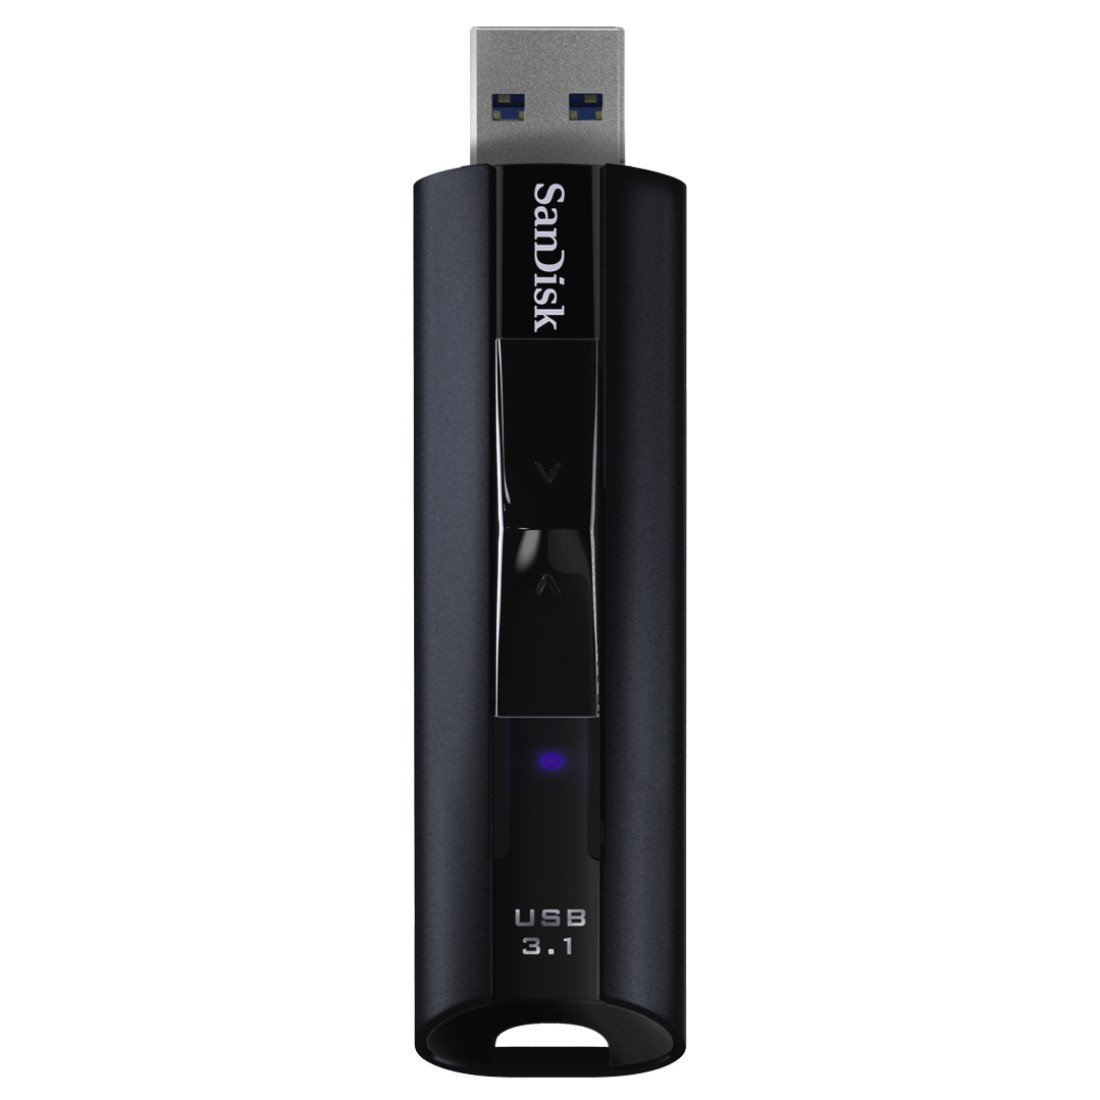 Memoria Flash USB 3.1 de Estado sólido SanDisk Extreme Pro de 128 GB solo 35€